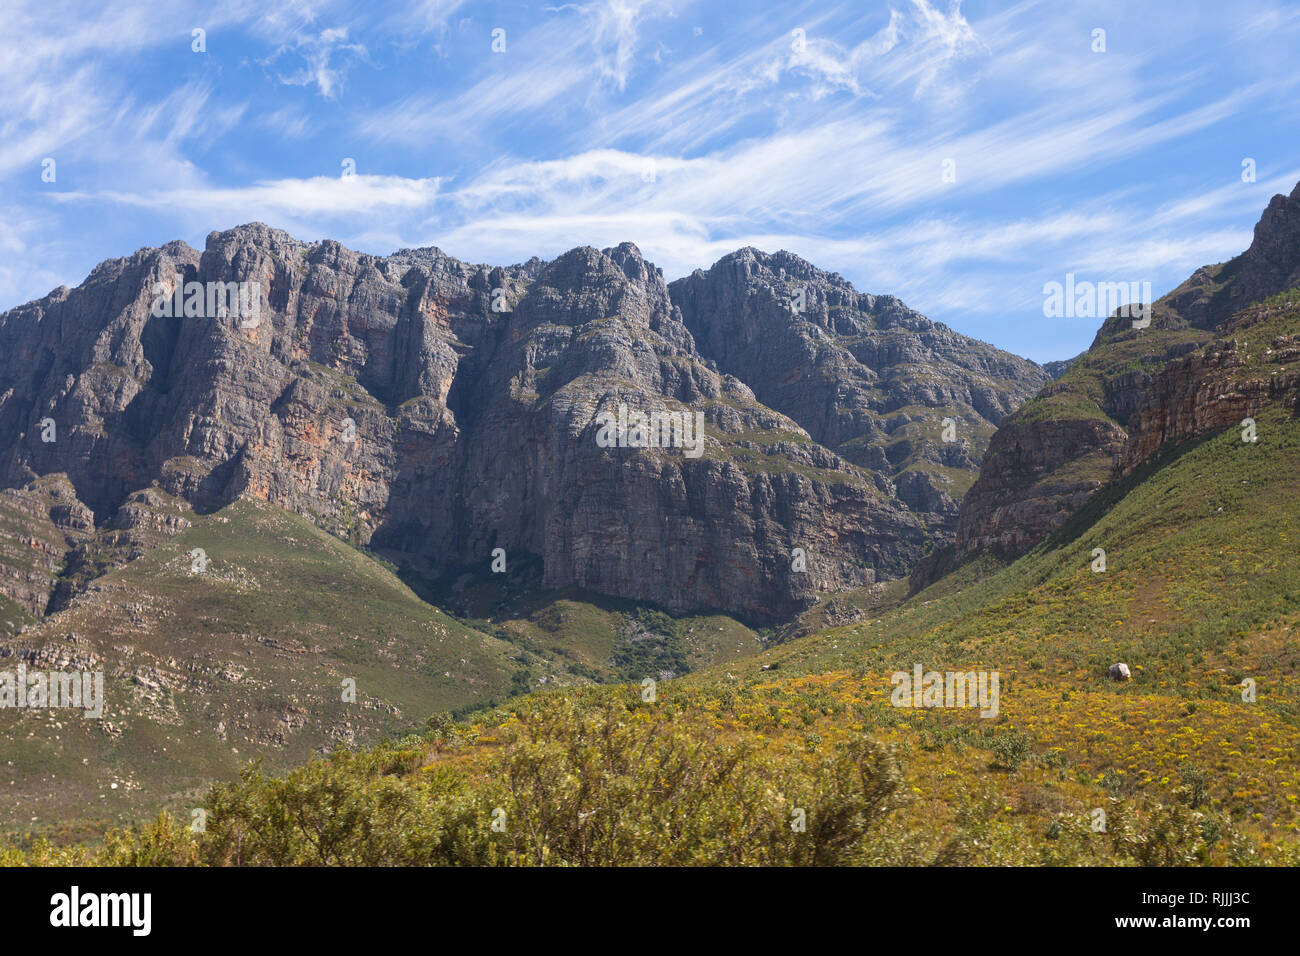 Montagne nella provincia del Capo occidentale del Sud Africa, situato tra Paarl e Worcester, il du Toitskloof montagne fanno parte del capo piegare la cinghia Foto Stock